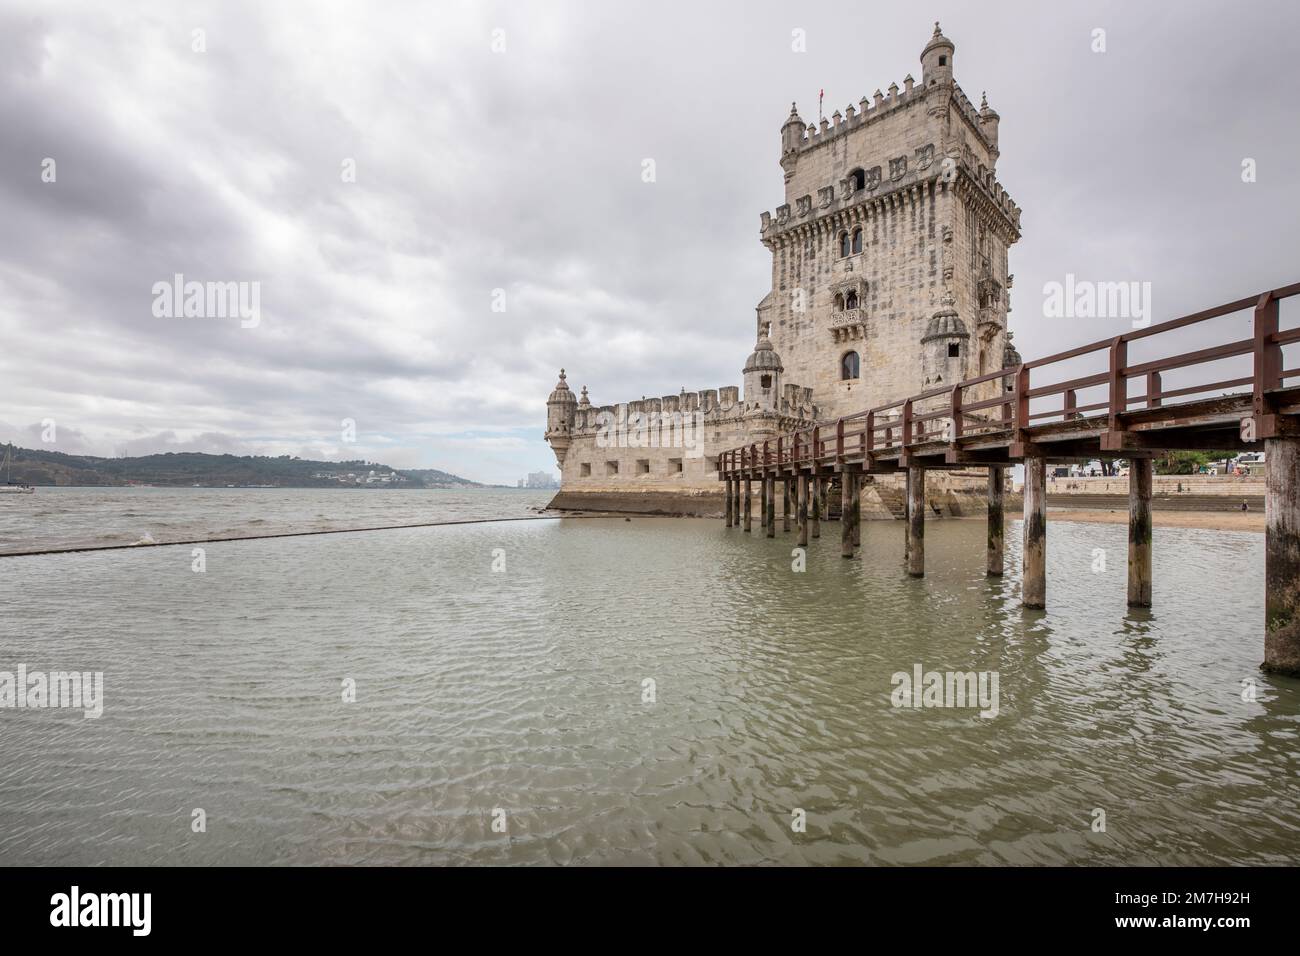 Edificio Torre de belem a Lisbona con una passerella in legno in una giornata nuvolosa Foto Stock